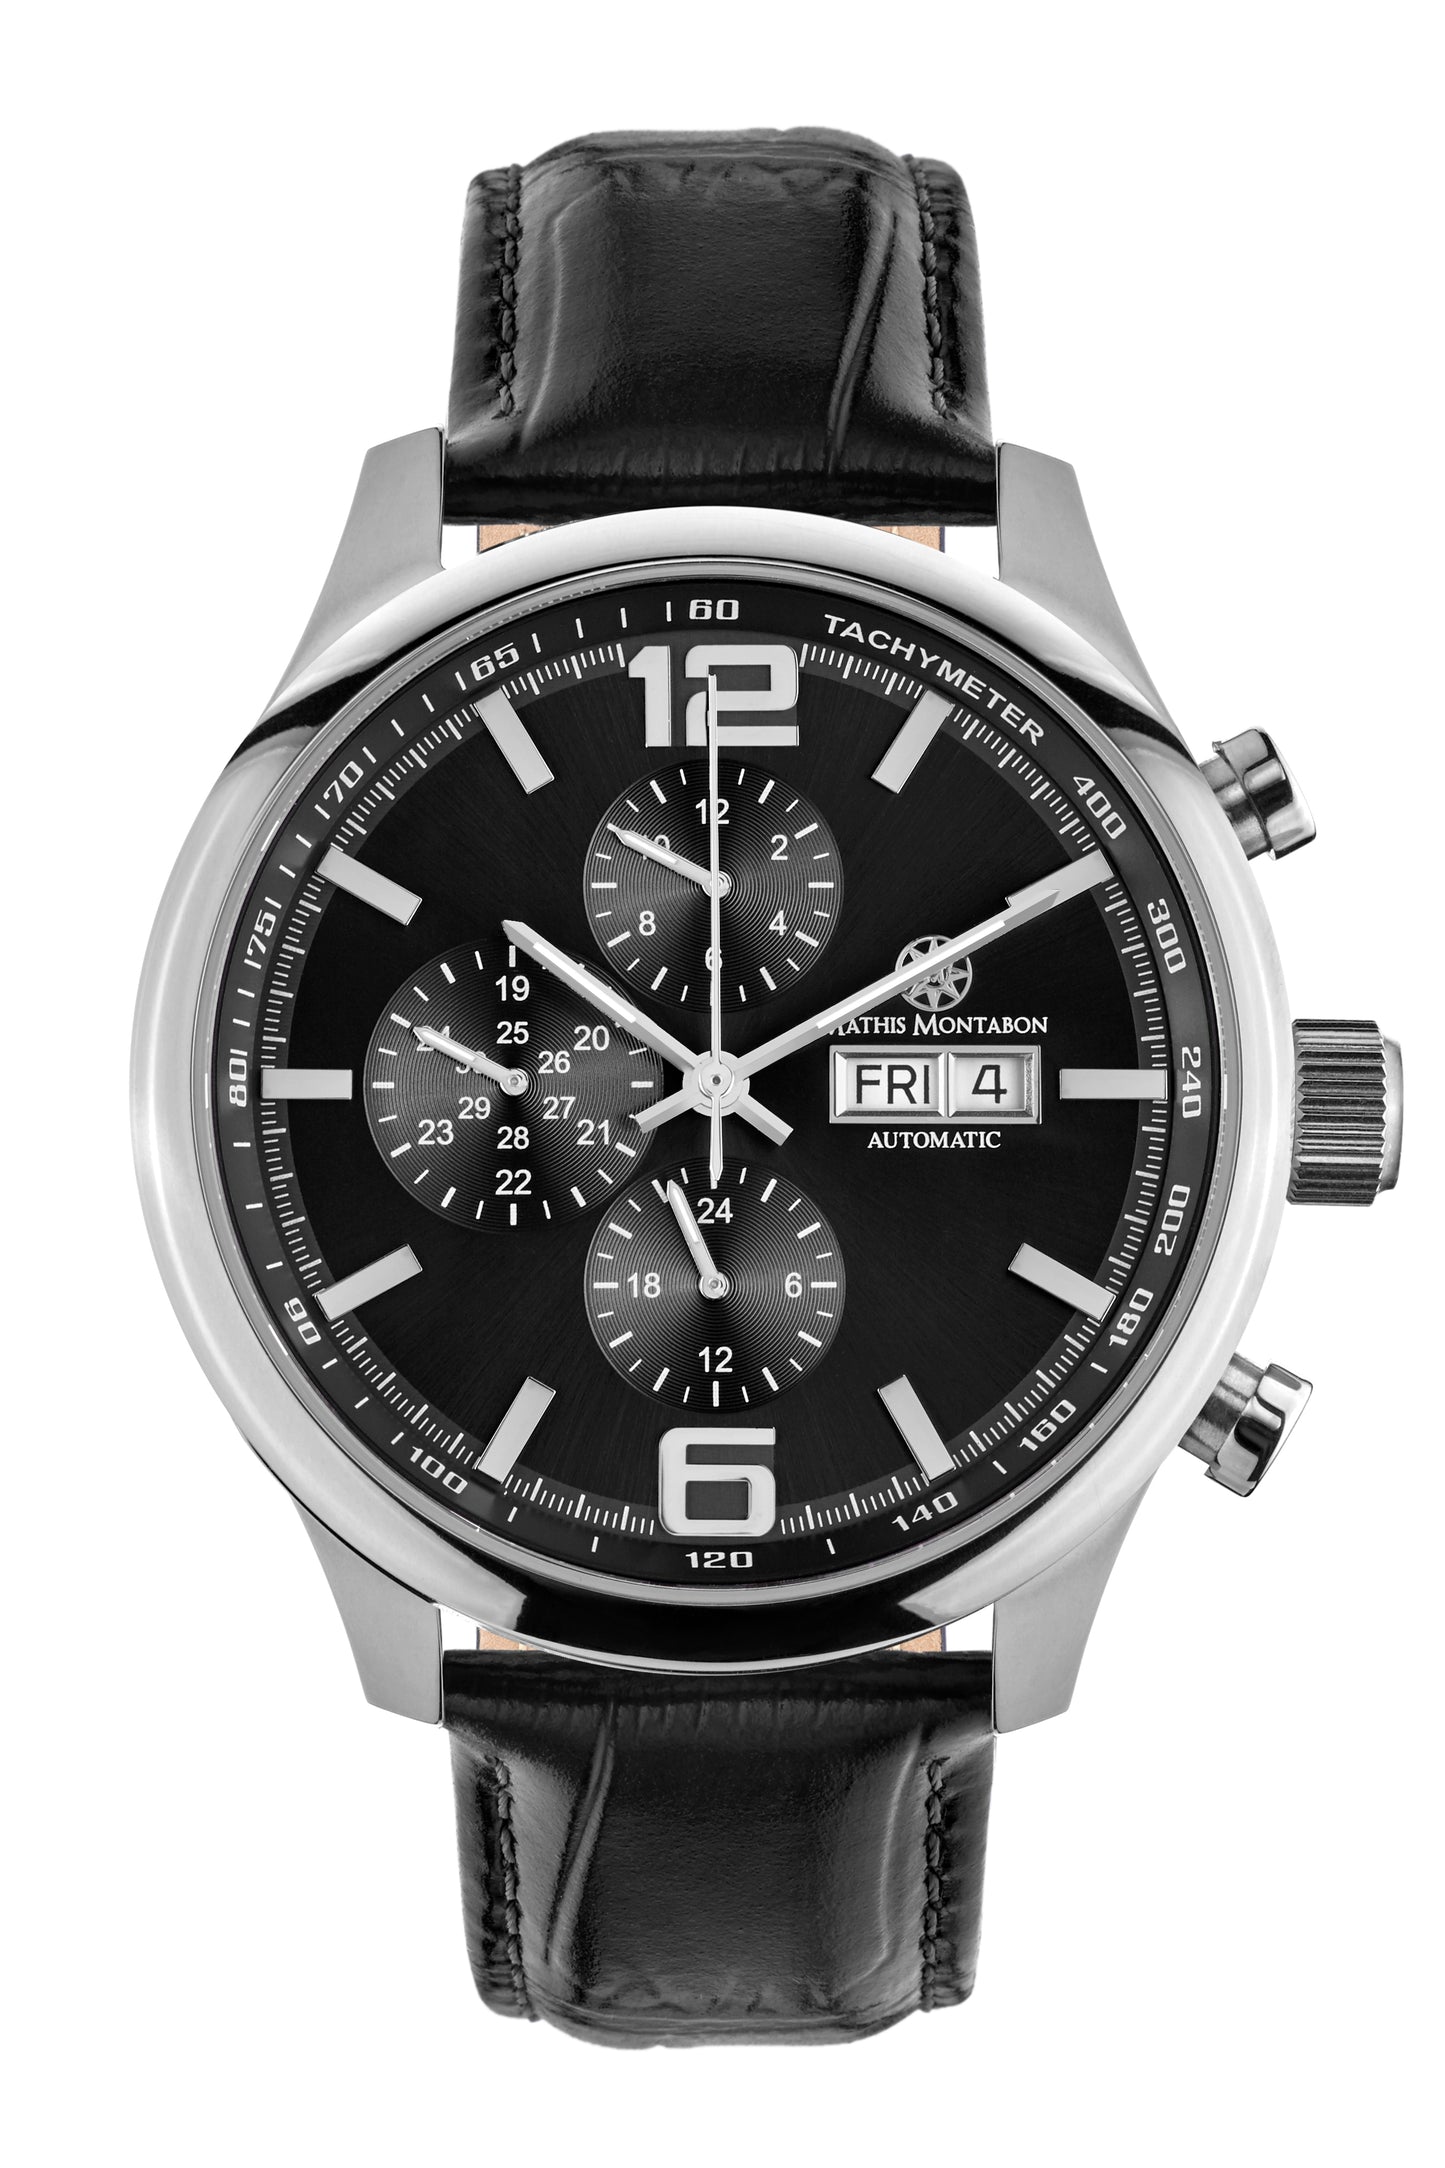 Automatic watches — Grande Date II — Mathis Montabon — schwarz